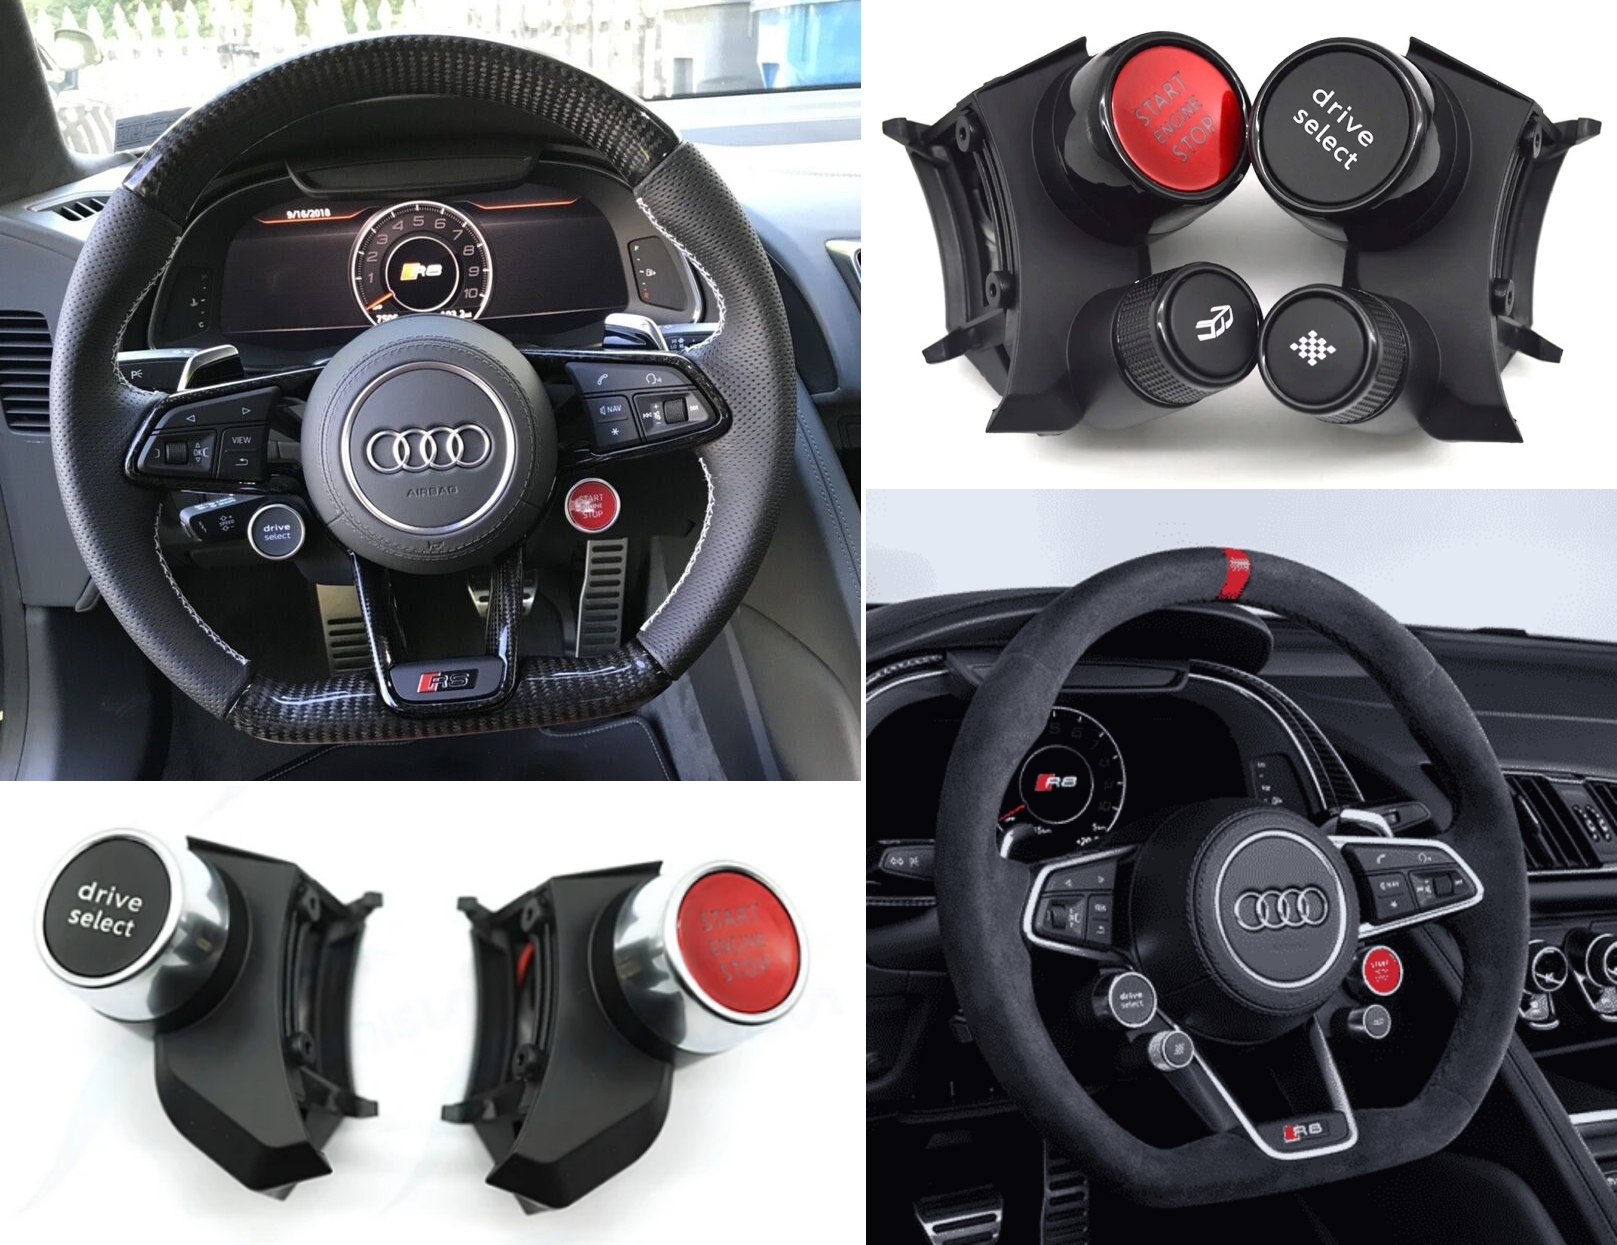 Montaż przycisków funkcyjnych Drive Select do kierownicy